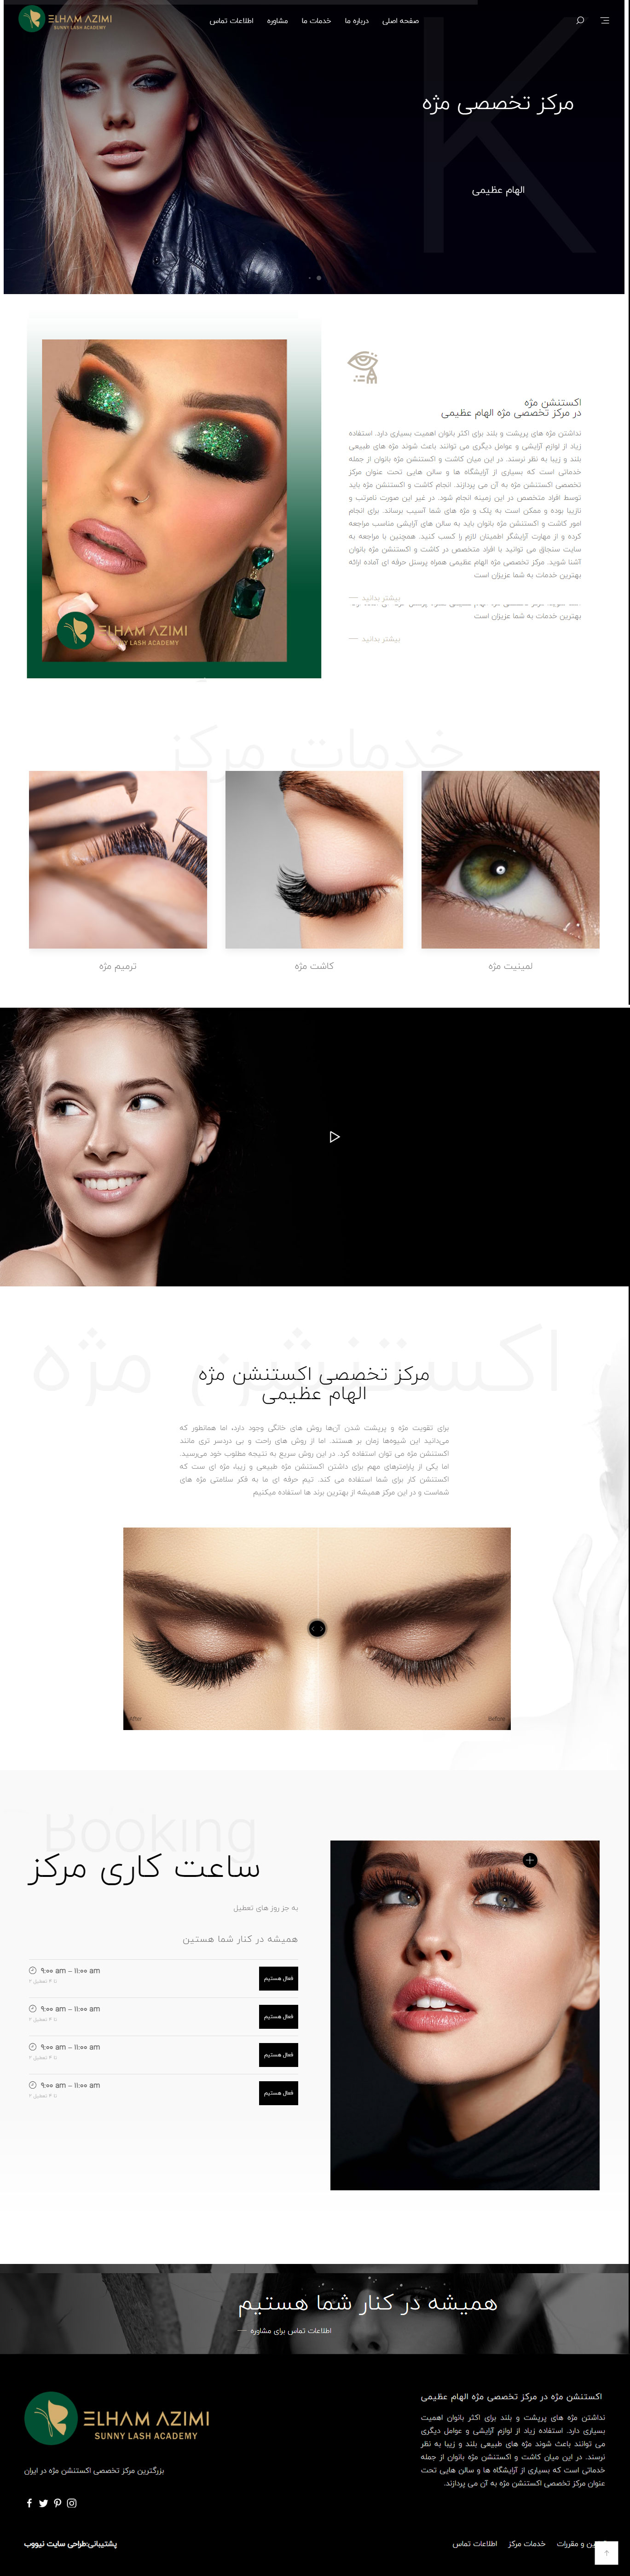 طراحی سایت آرایشگاه زنانه و خدمات مژه